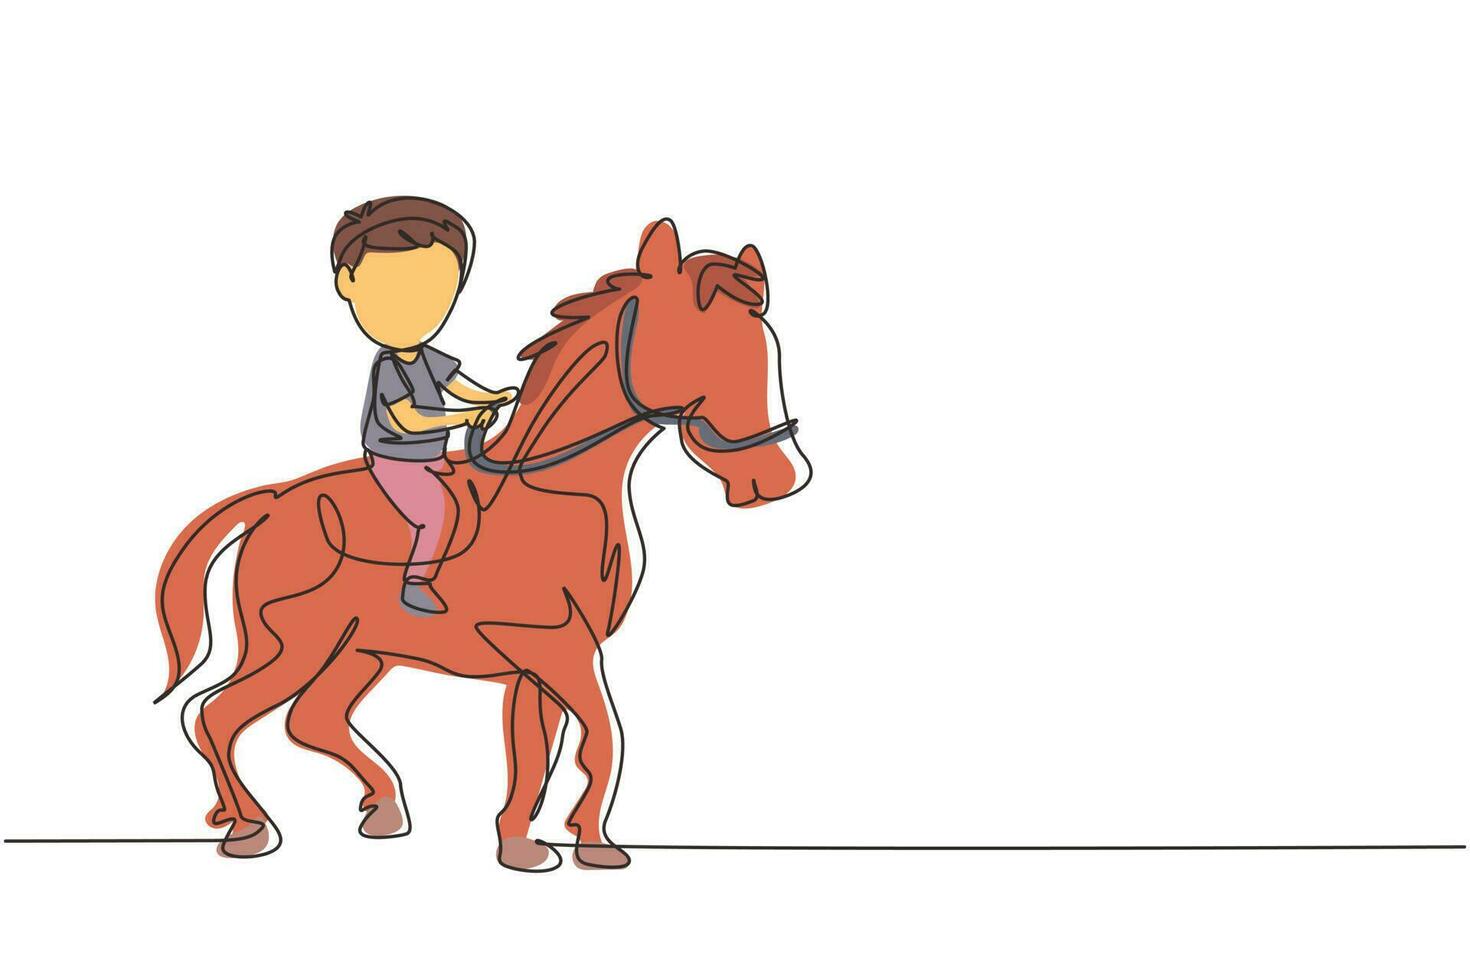 único desenho de linha contínua menino bonito feliz montando cavalo bonito. criança sentada no cavalo traseiro com sela no parque da fazenda. crianças aprendendo a andar a cavalo. uma linha desenhar ilustração em vetor design gráfico